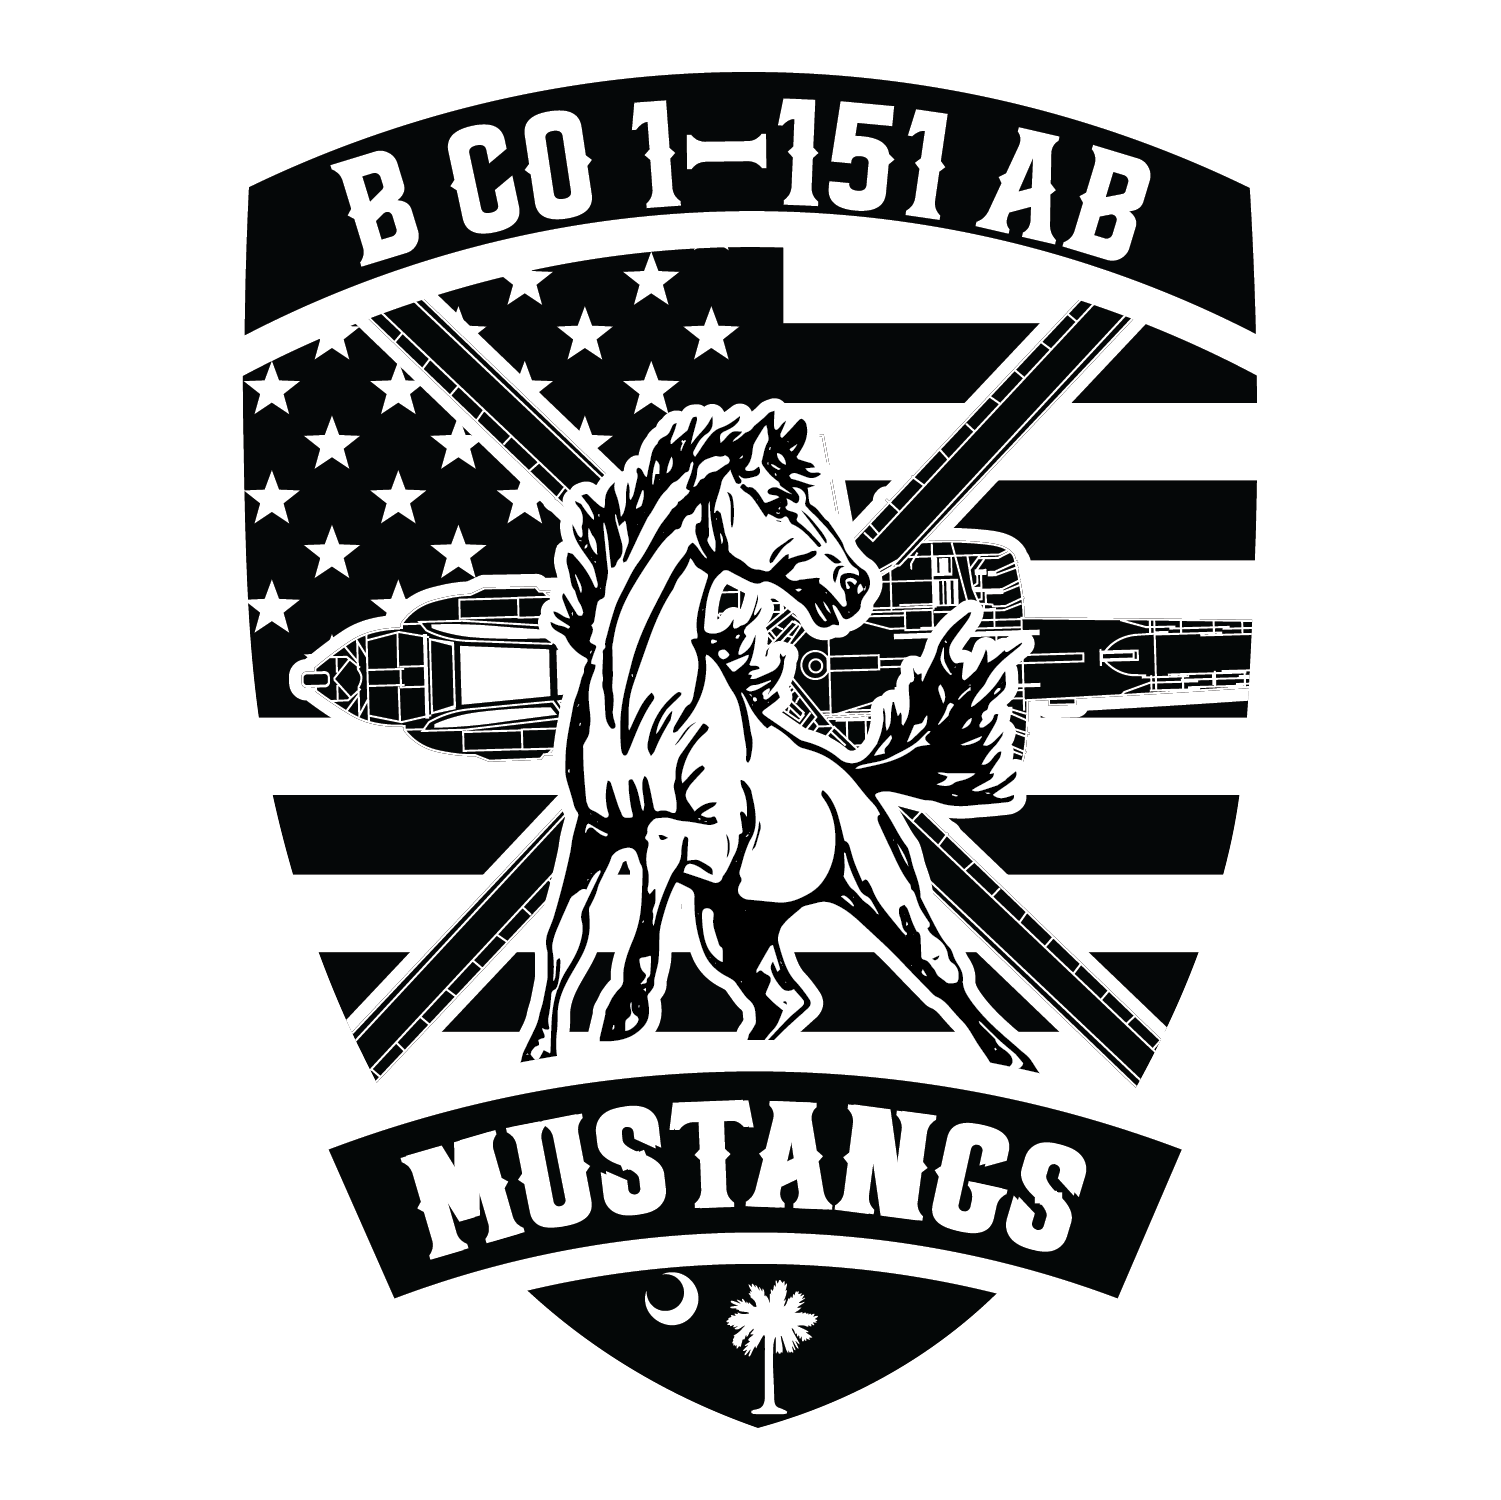 B Co, 1-151 AB "Mustangs"